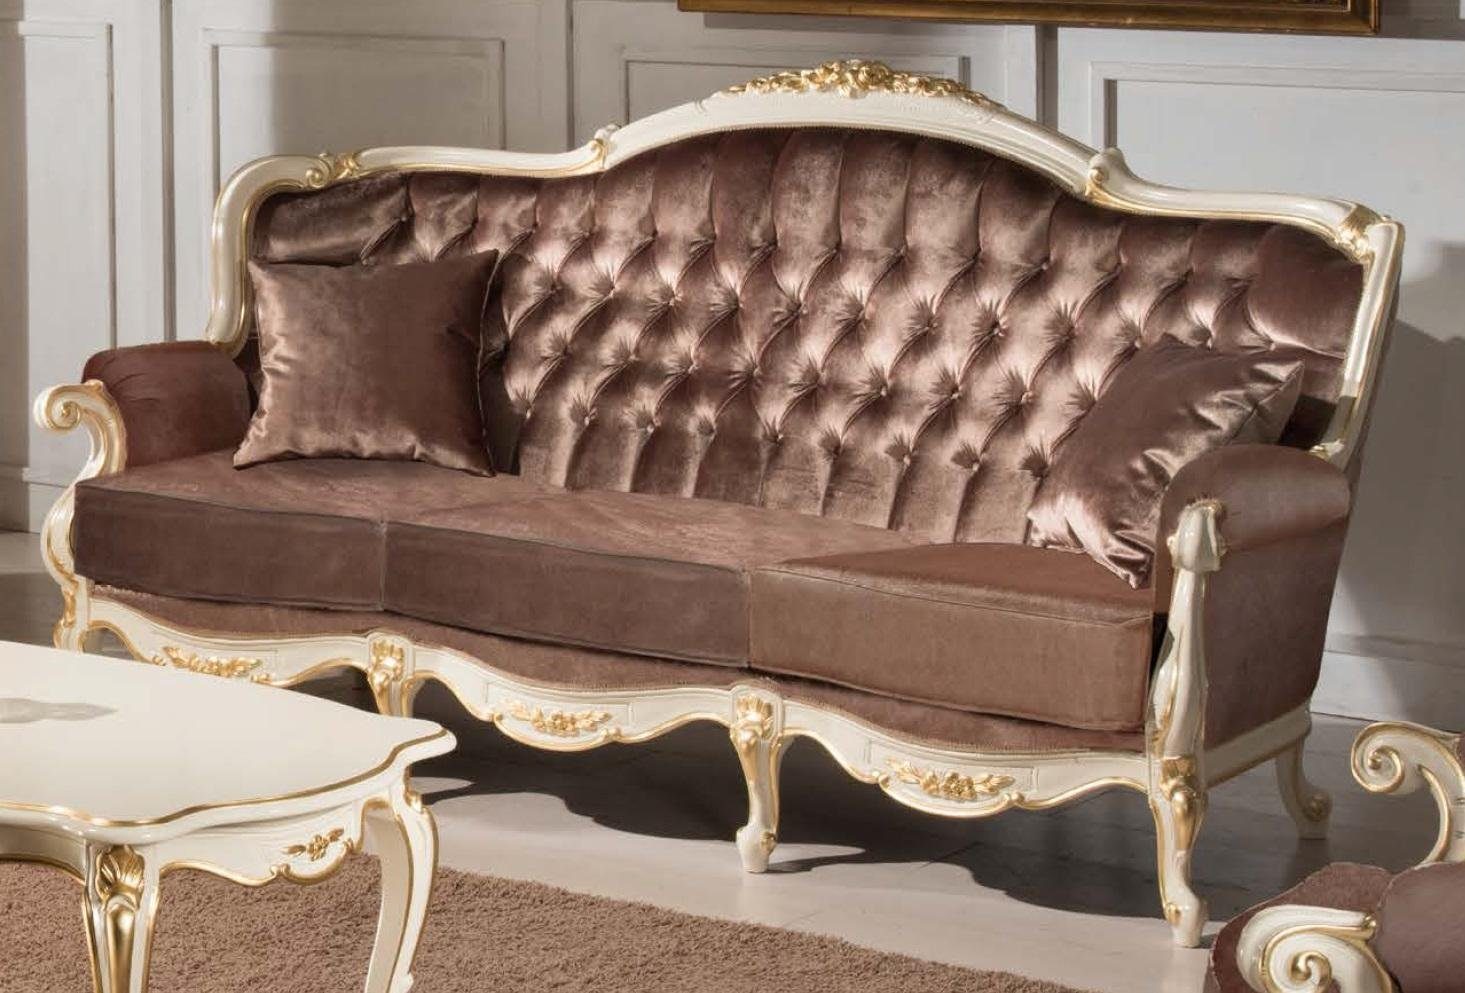 JVmoebel Sofa Klassischer Chesterfield Brauner Dreisitzer Luxus Sofa Stilvolle Couch, Made in Europe